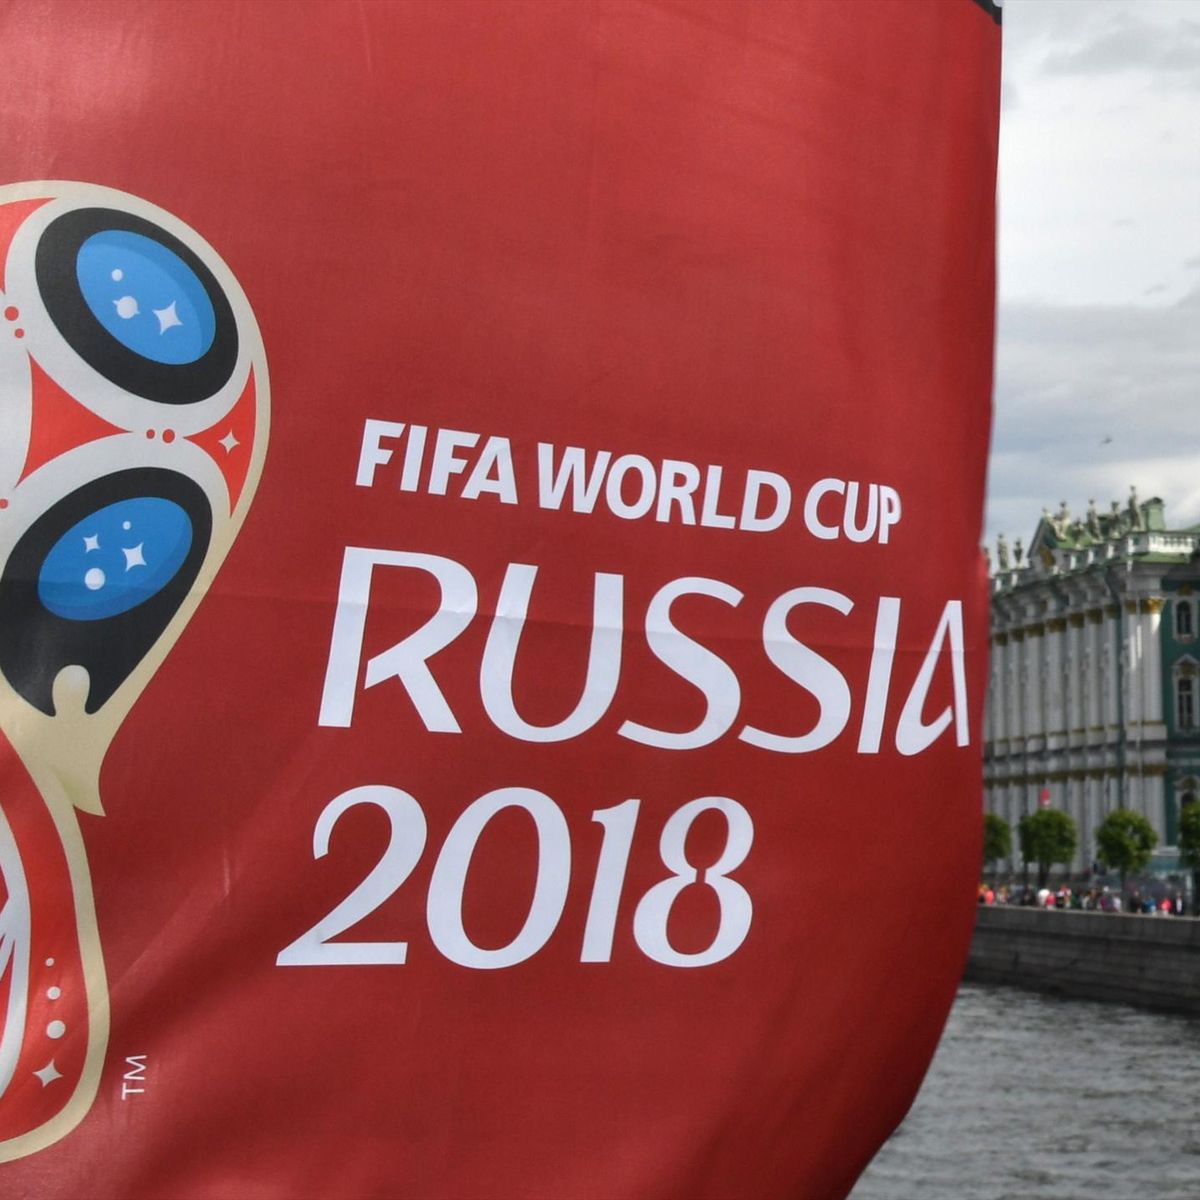 arrojar polvo en los ojos borgoña Pasteles Calendarios y resultados del Mundial de Rusia 2018 - Eurosport